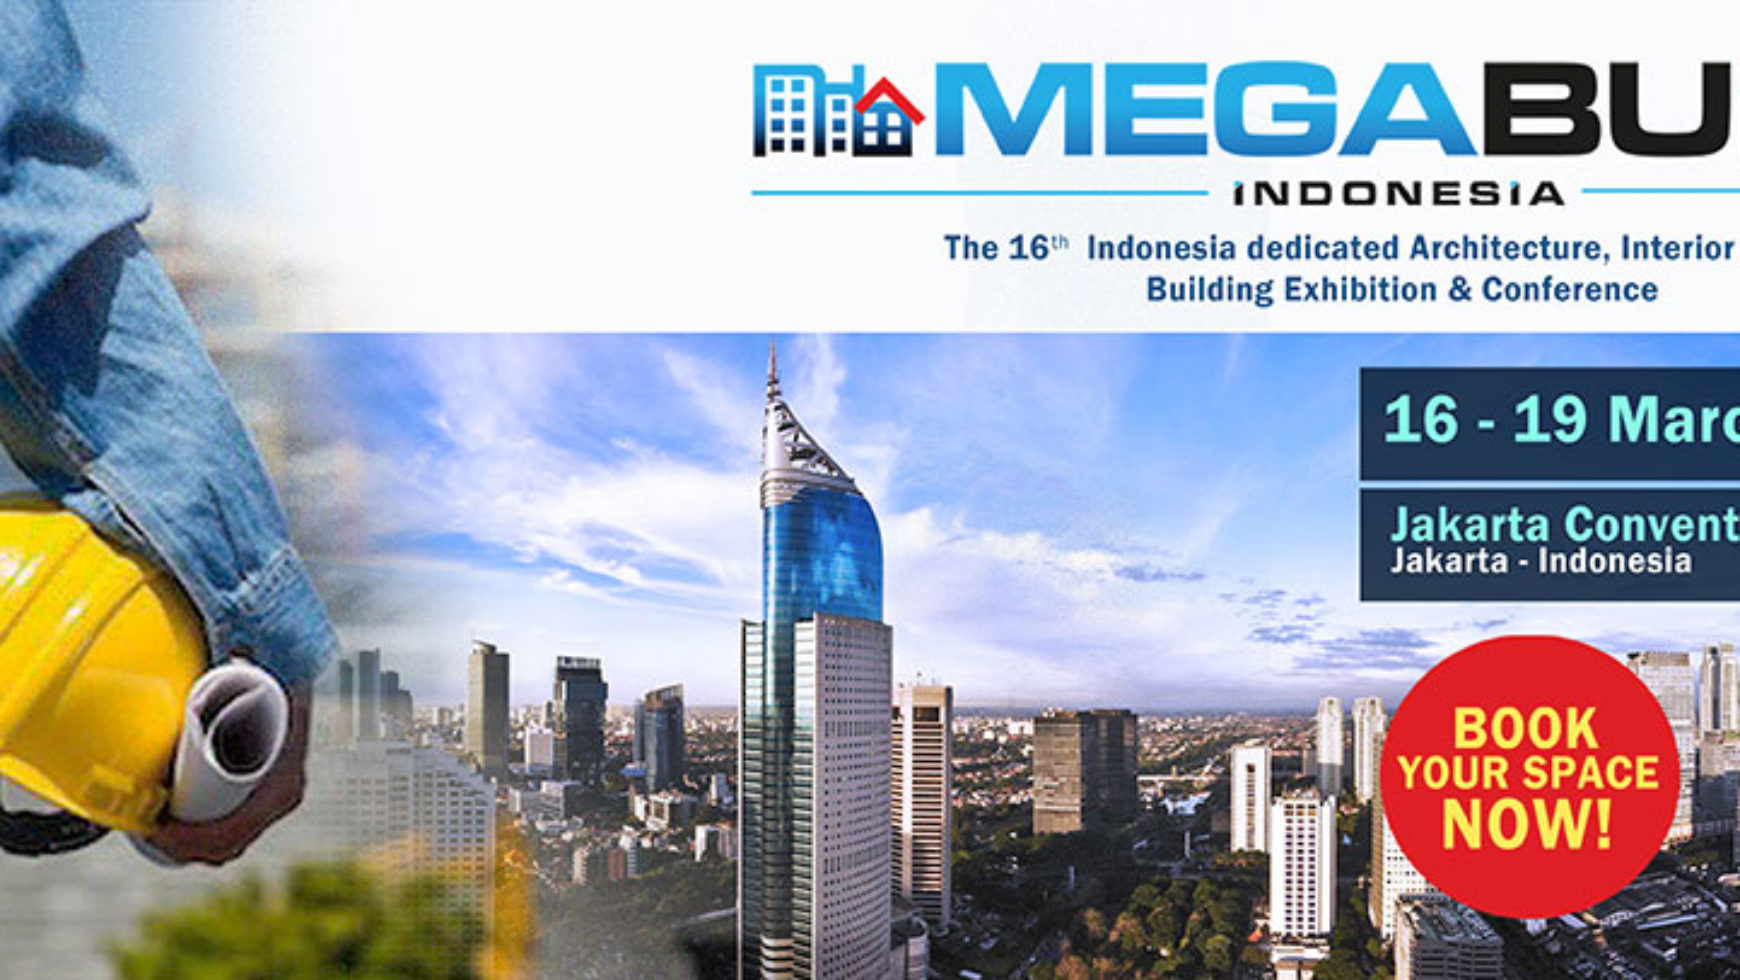 MEGABUILD INDONESIA EXPO MARET 2017